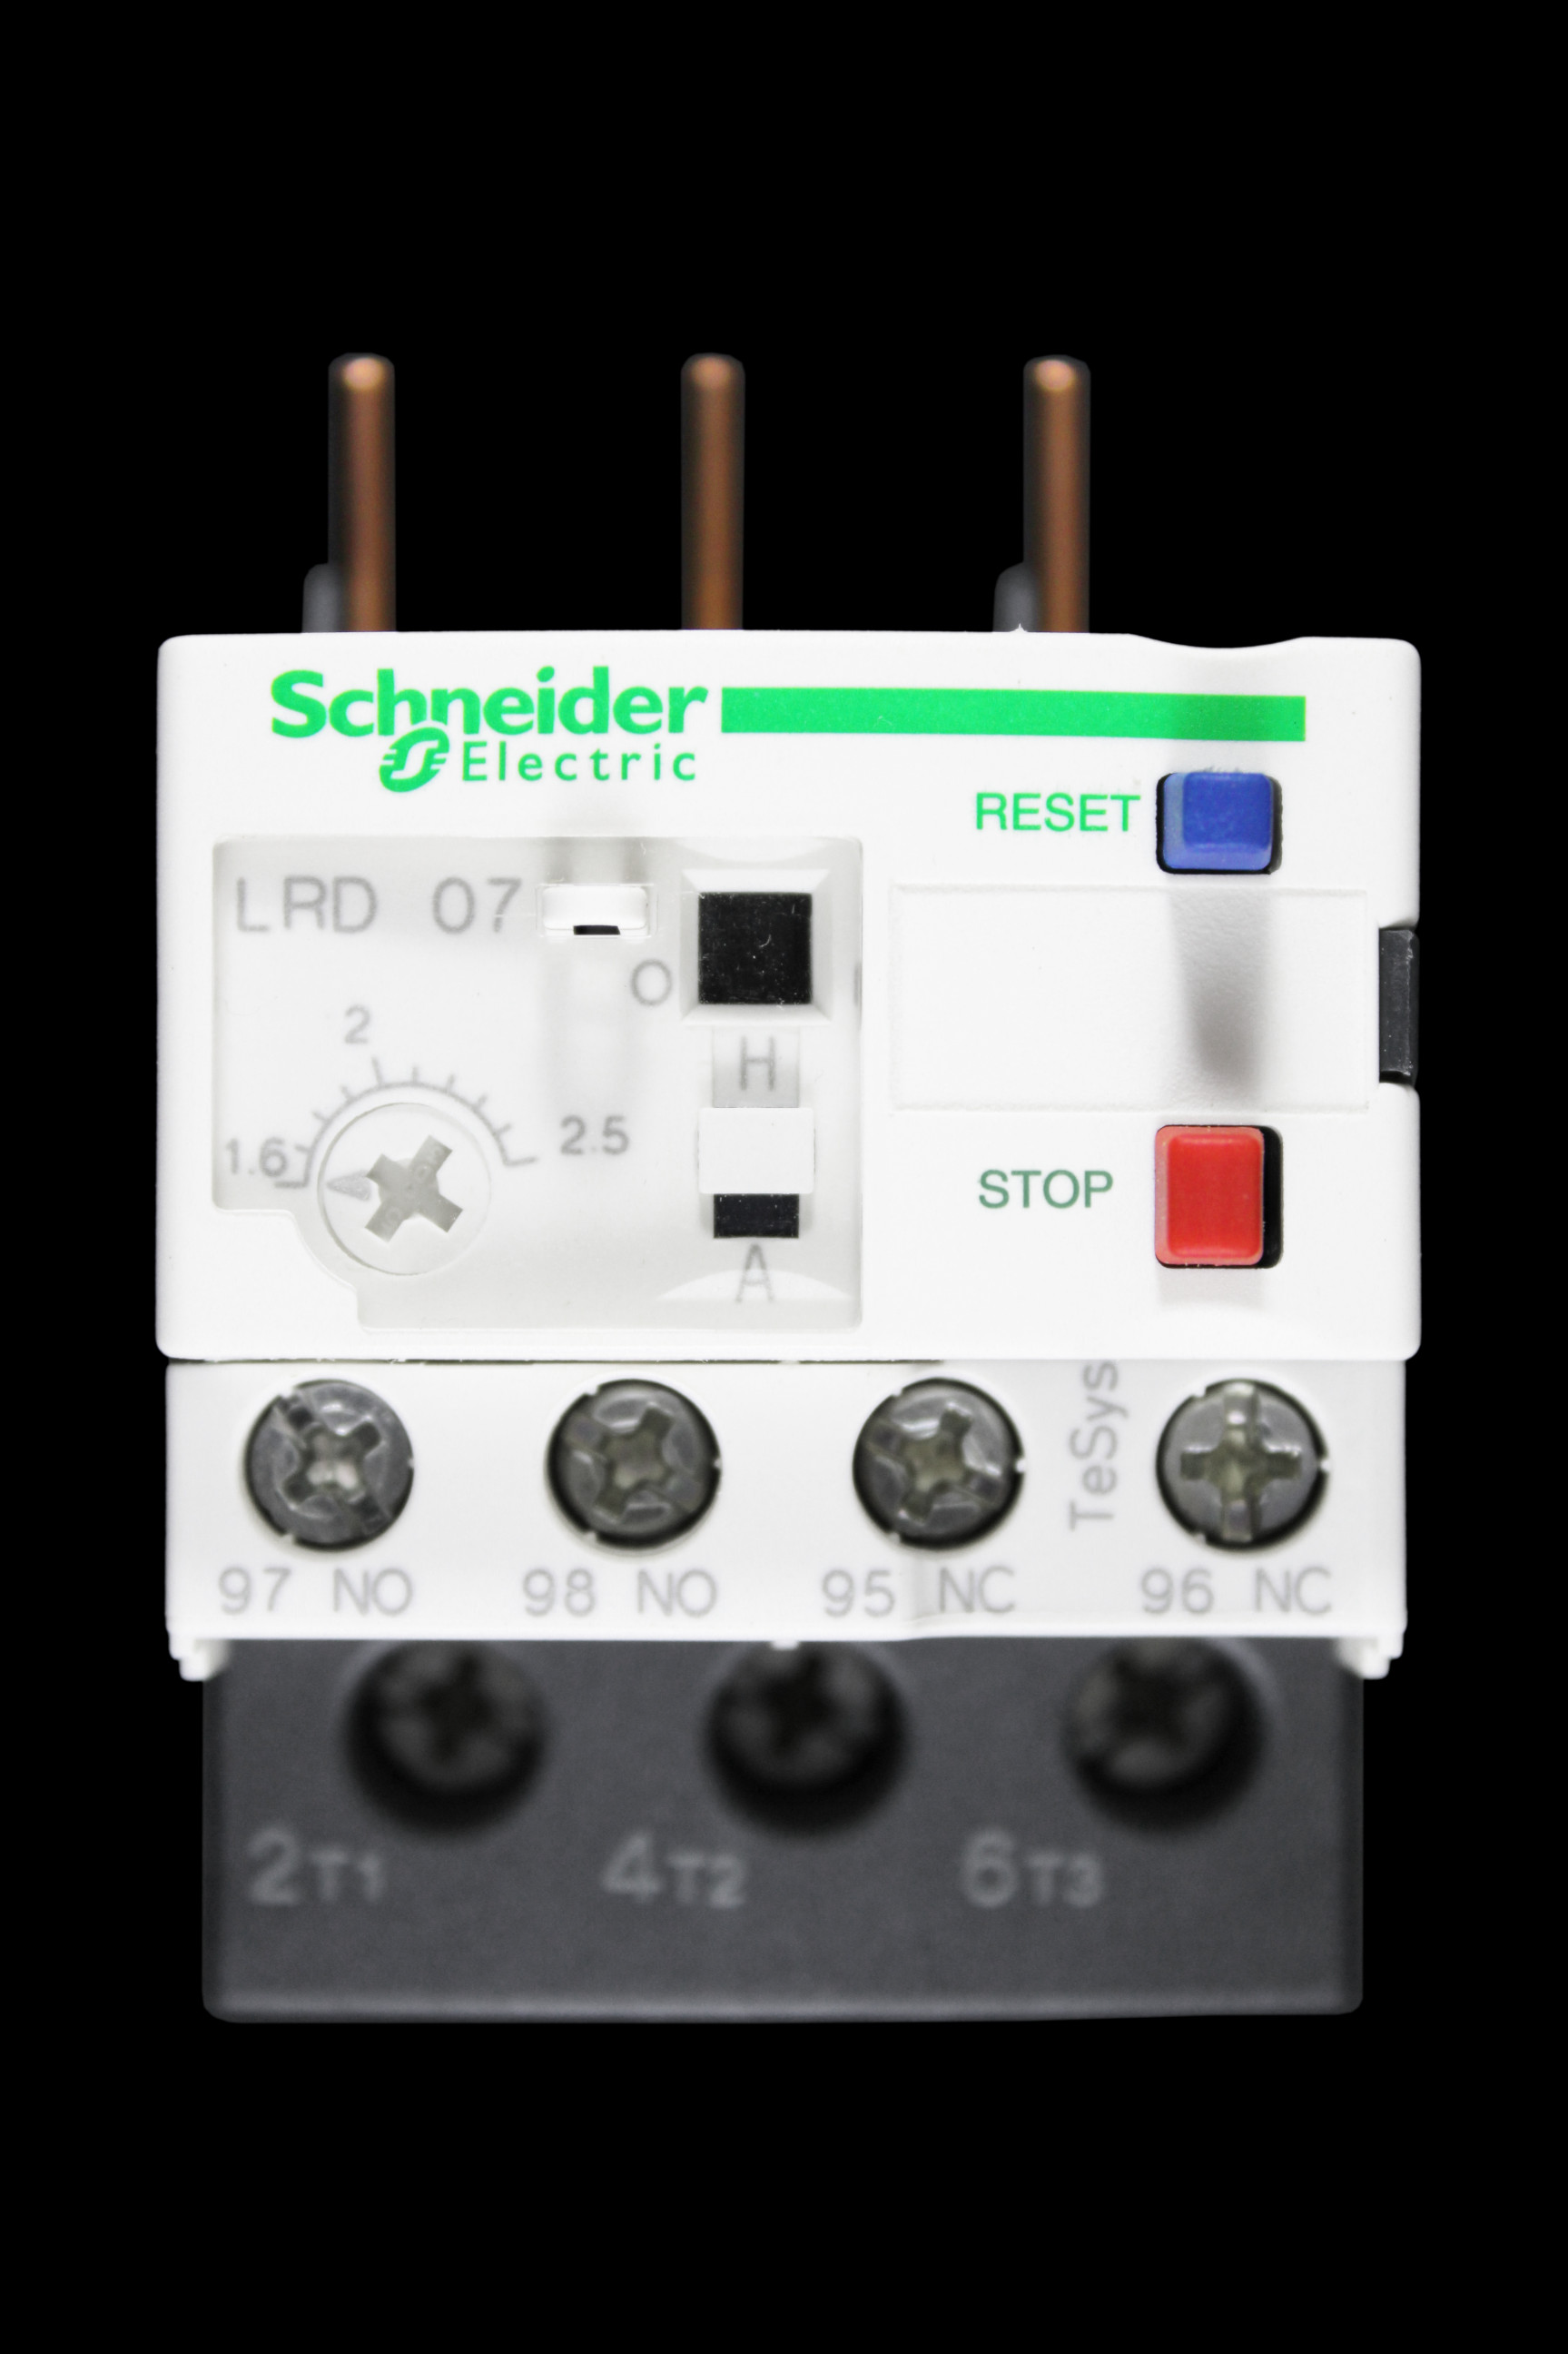 SCHNEIDER 1.6 – 2.5 AMP OVERLOAD RELAY LRD07